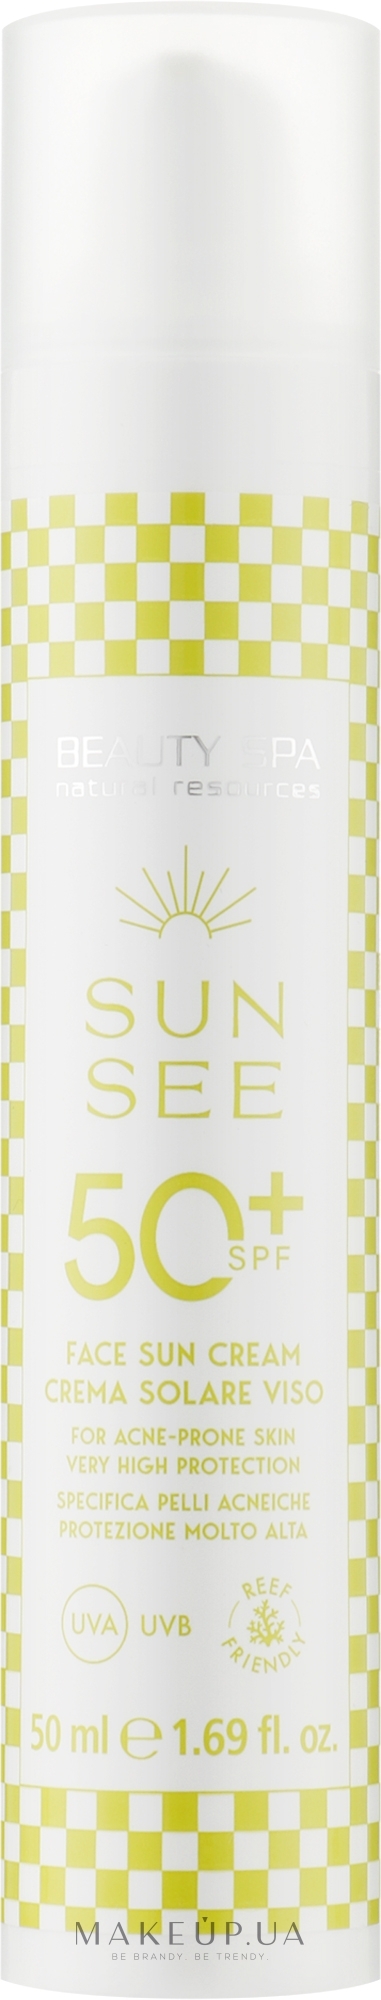 Солнцезащитный крем SPF 50 для жирной и комбинированной кожи лица - Beauty Spa Sun See Face Sun Cream — фото 50ml